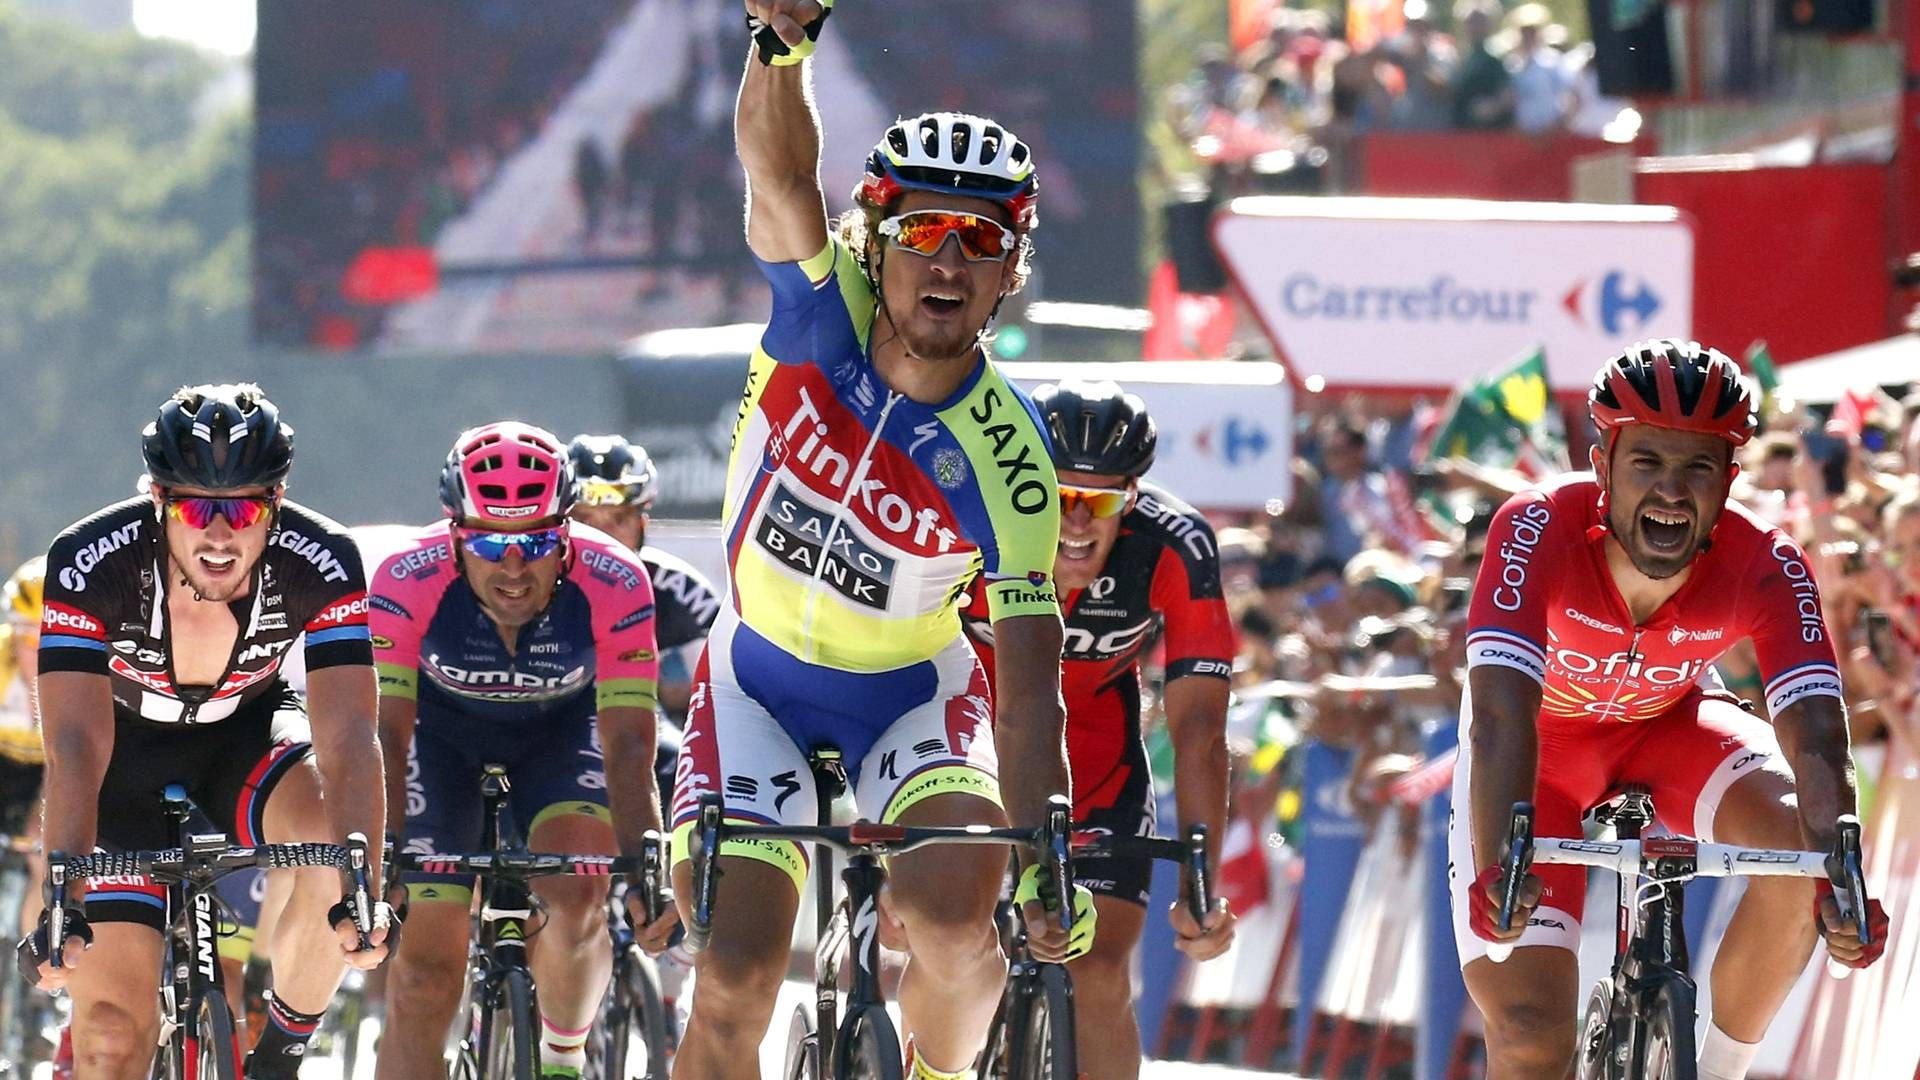 På fan.tv2.dk kan brugerne engagere sig i årets Vuelta a Espana. | Foto: DCM/Polfoto